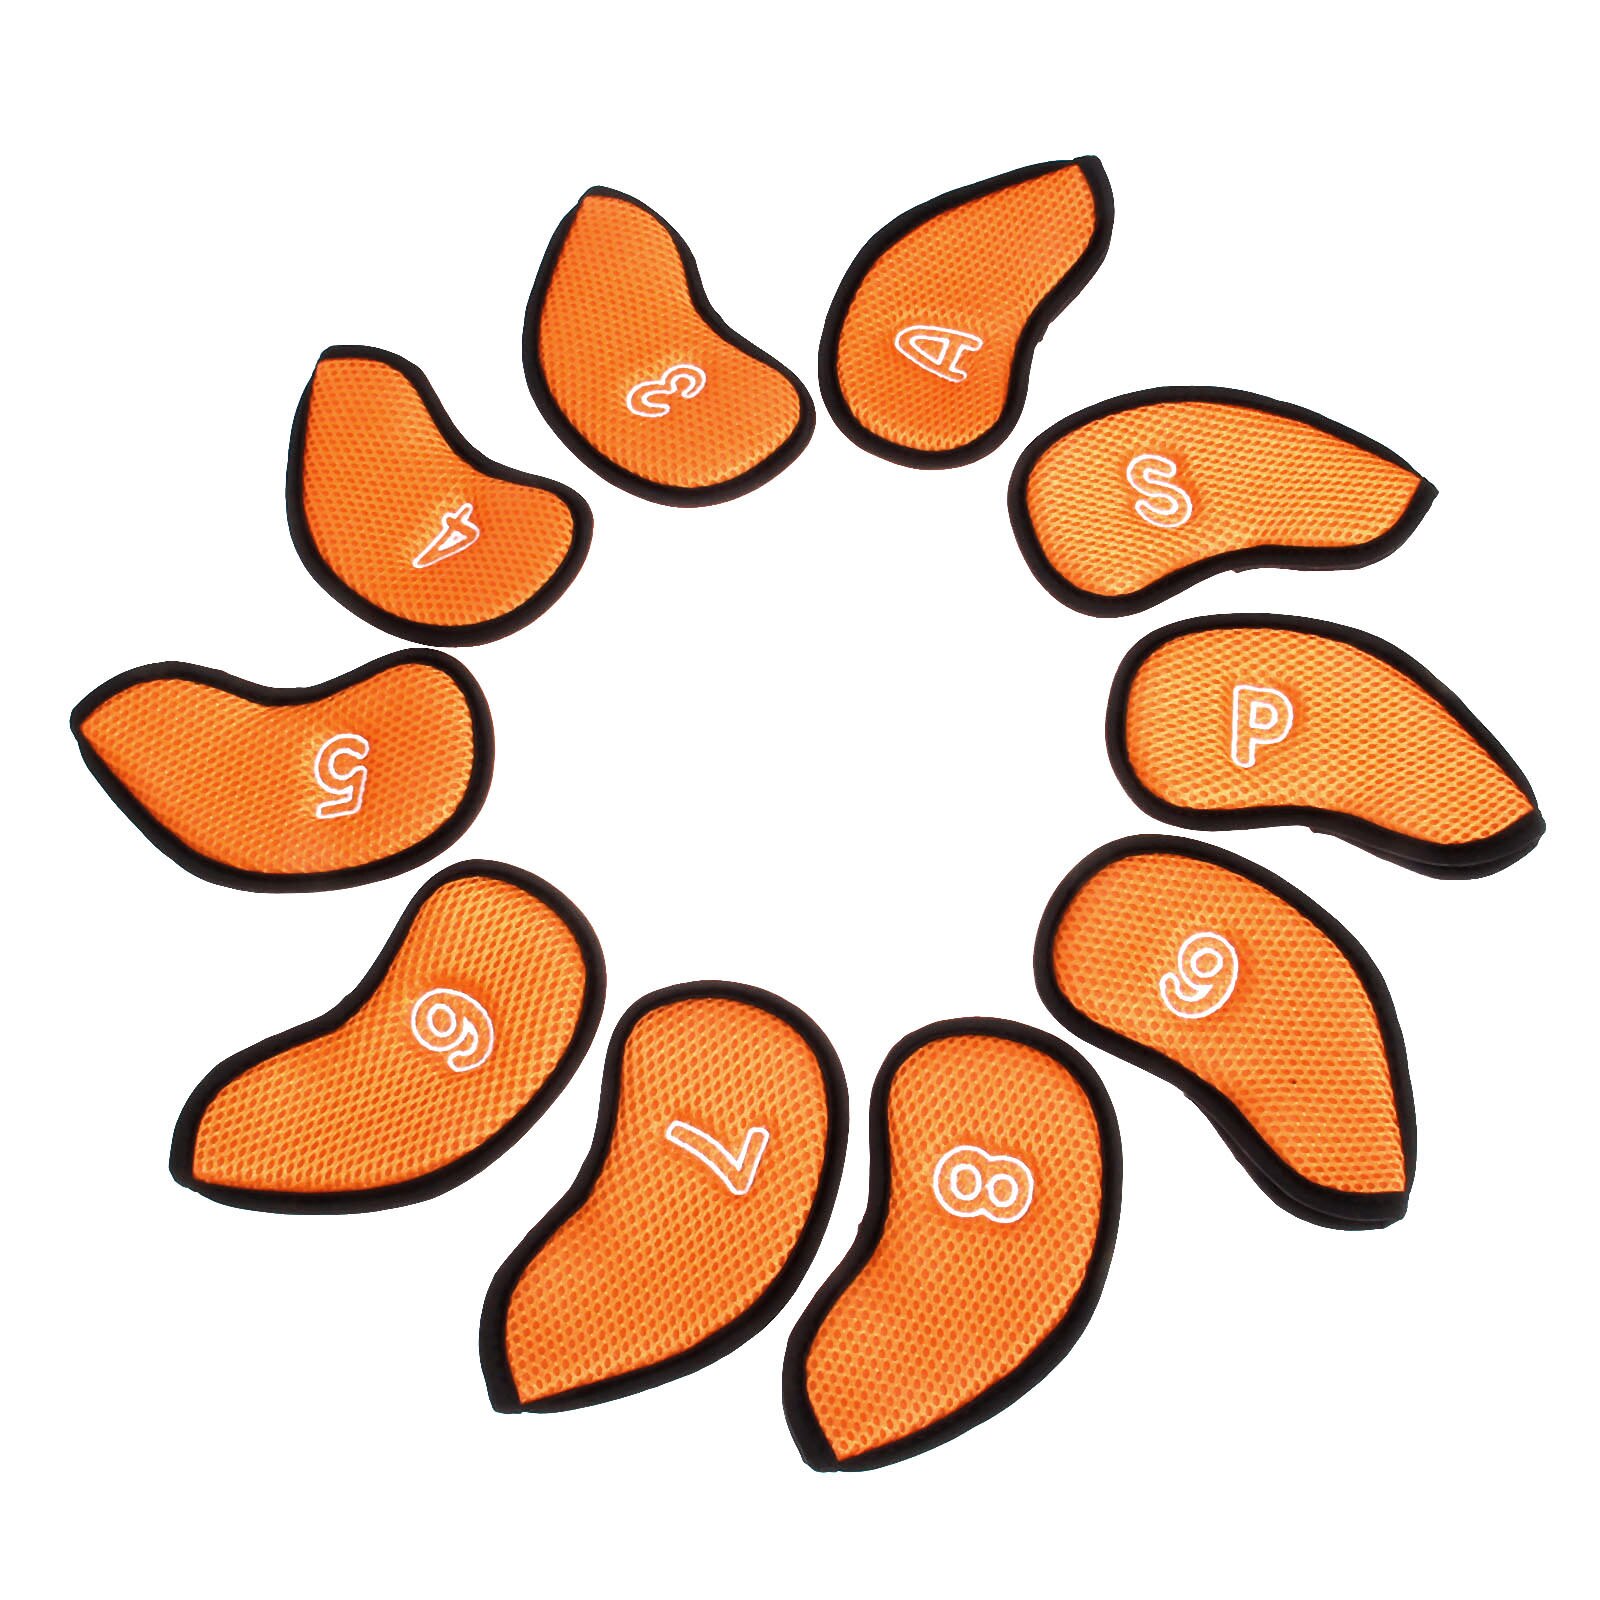 10 stk golfklubhoveddæksler af neoprennet mesh beskyttelsessæt med nummer  (3,4,5,6,7,8,9, a, s, p) passer til de fleste standardklubber: Orange